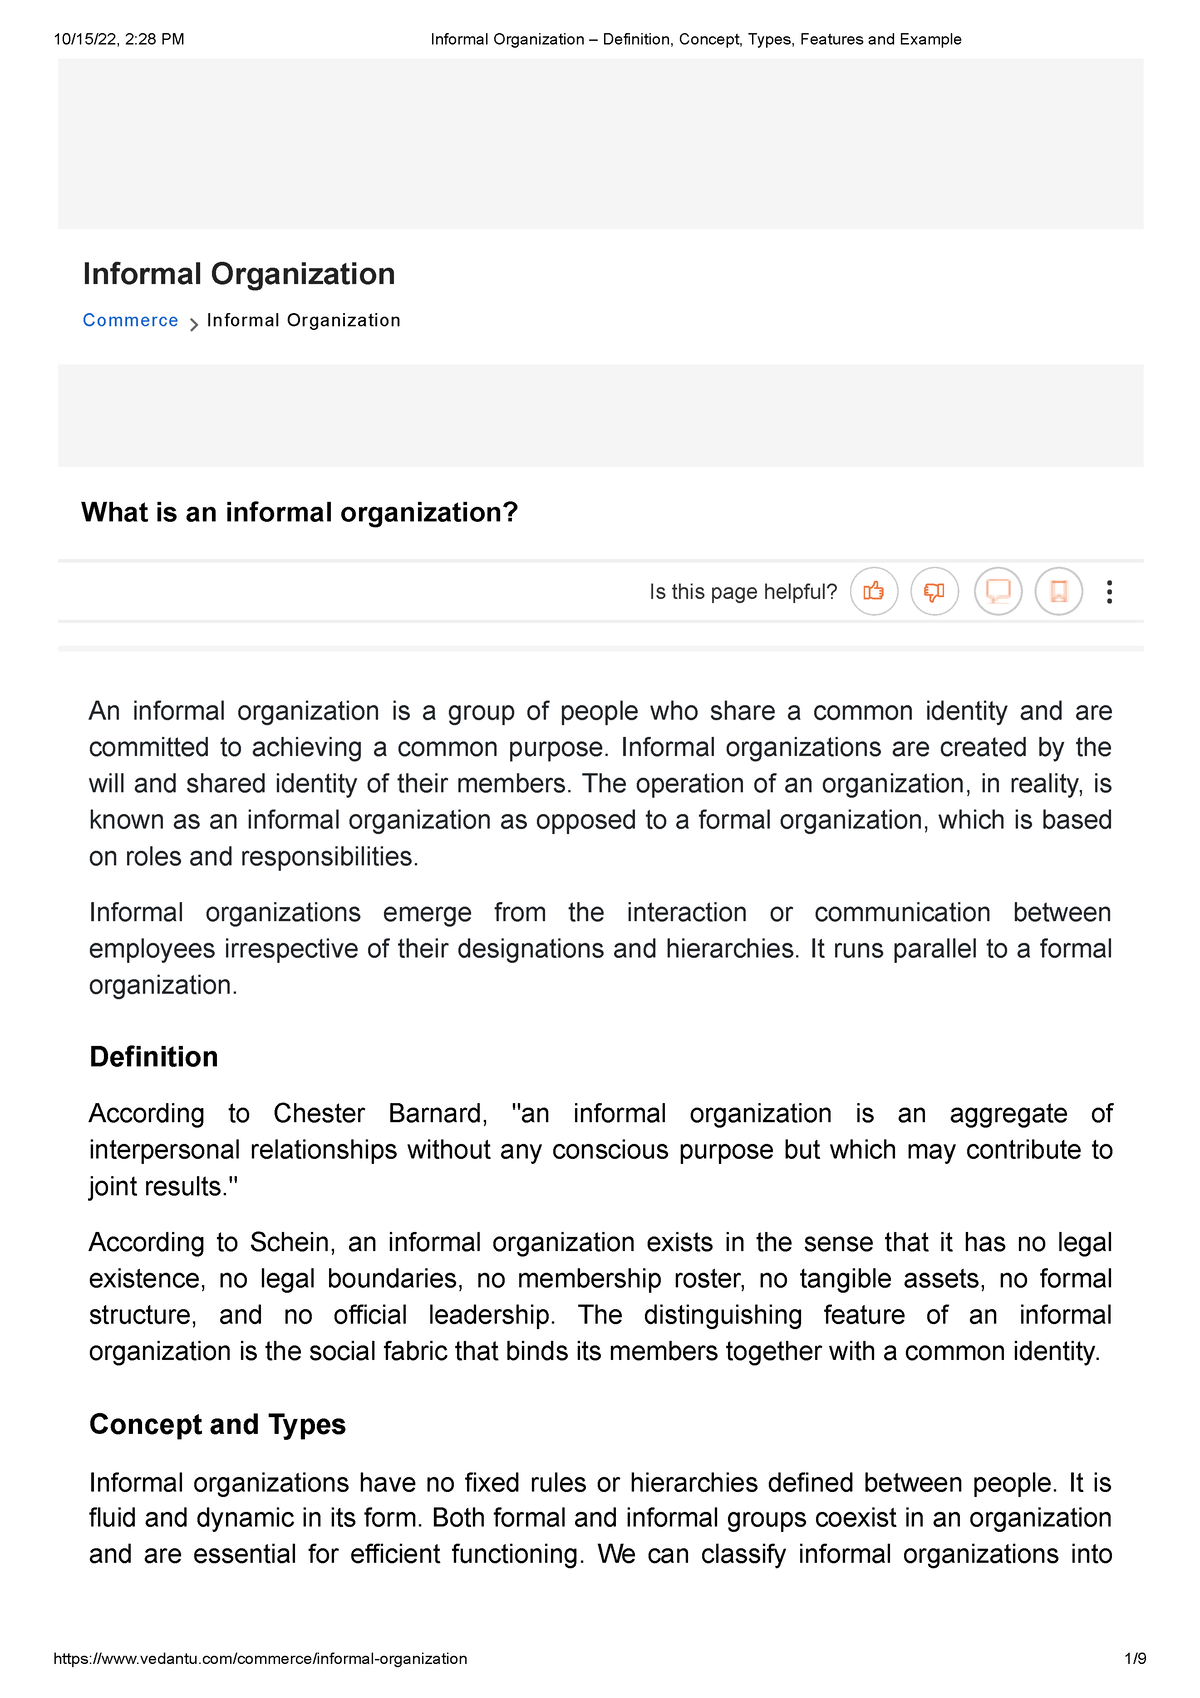 essay about informal organization